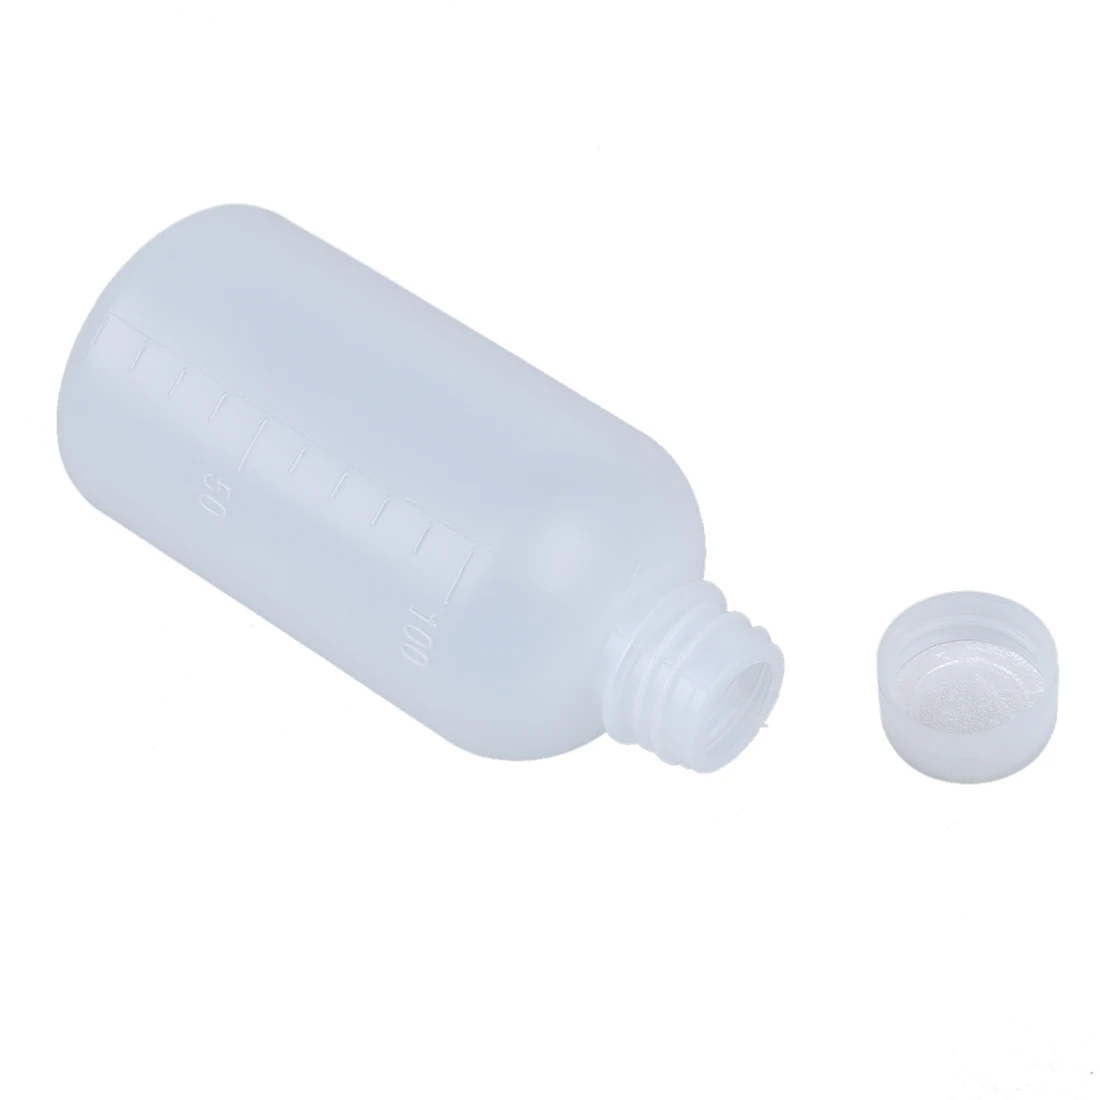 Хороший 100 мл Clear Пластик цилиндрической формы Химическое вещество Бутылка 2 предмета